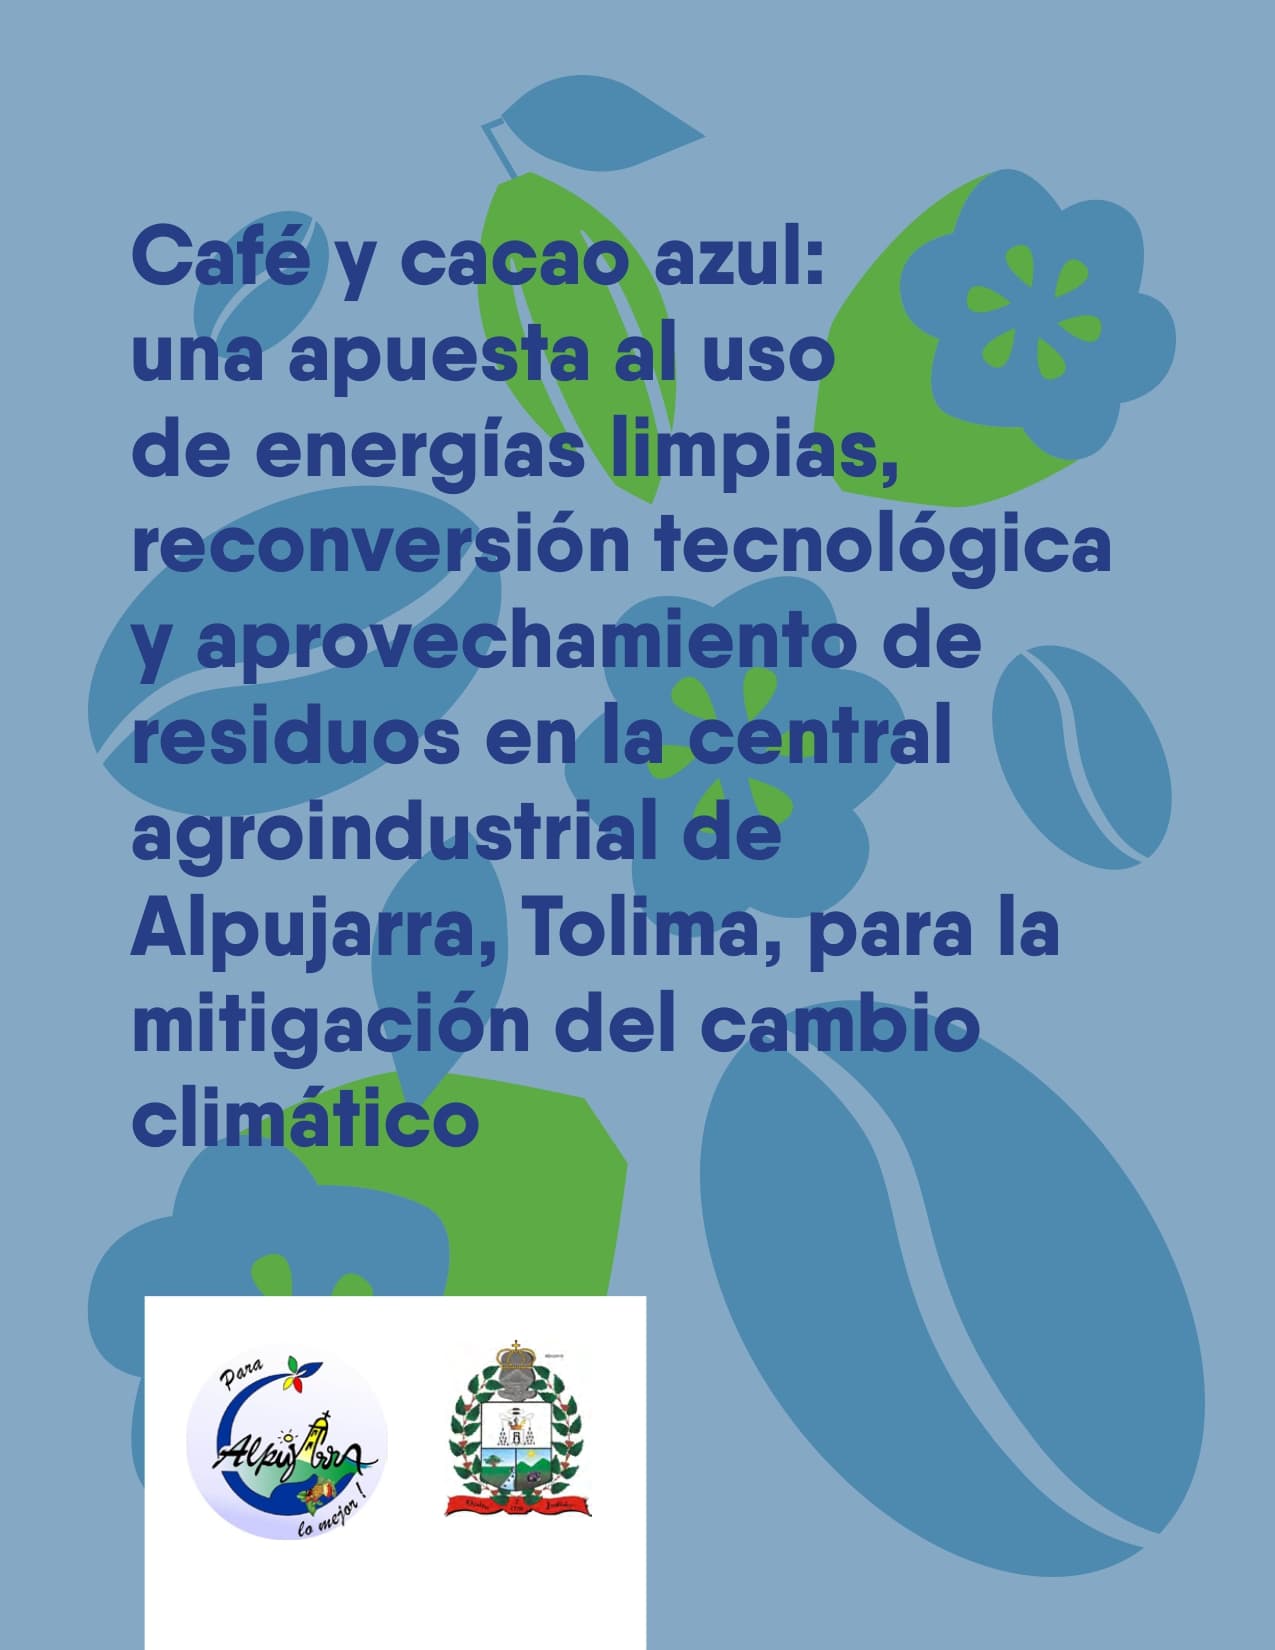 Café y cacao azul: una apuesta al uso de energías limpias